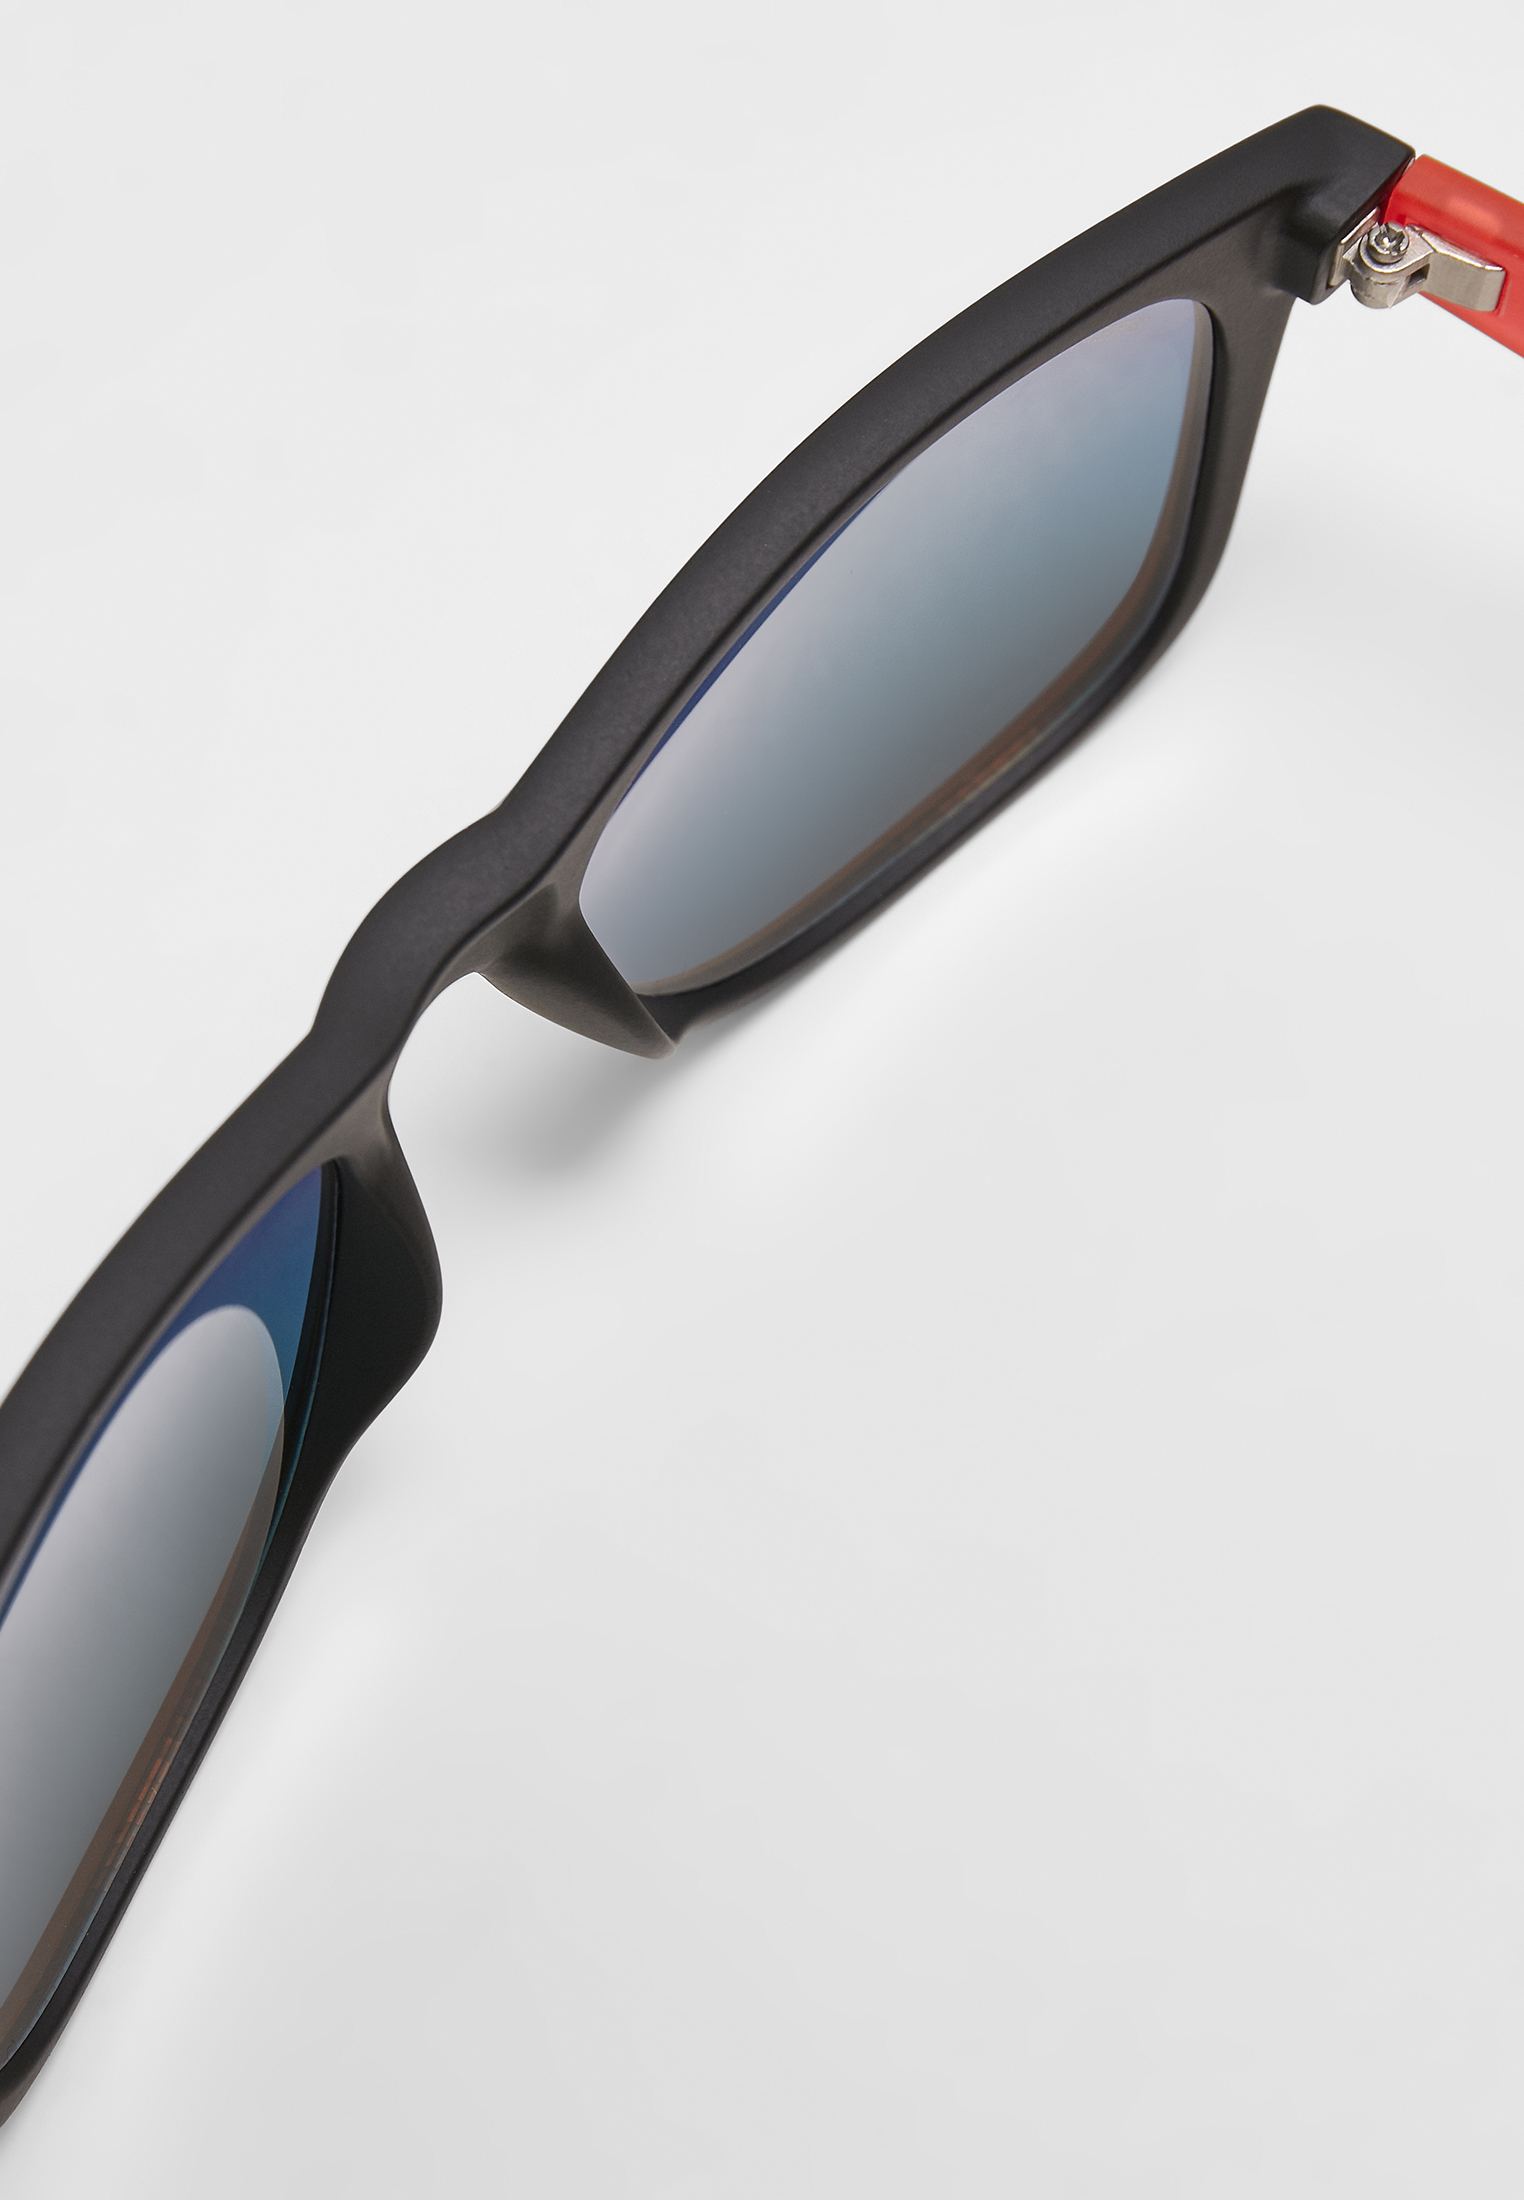 Sonnenbrillen Sunglasses Likoma Mirror UC in Farbe black/red